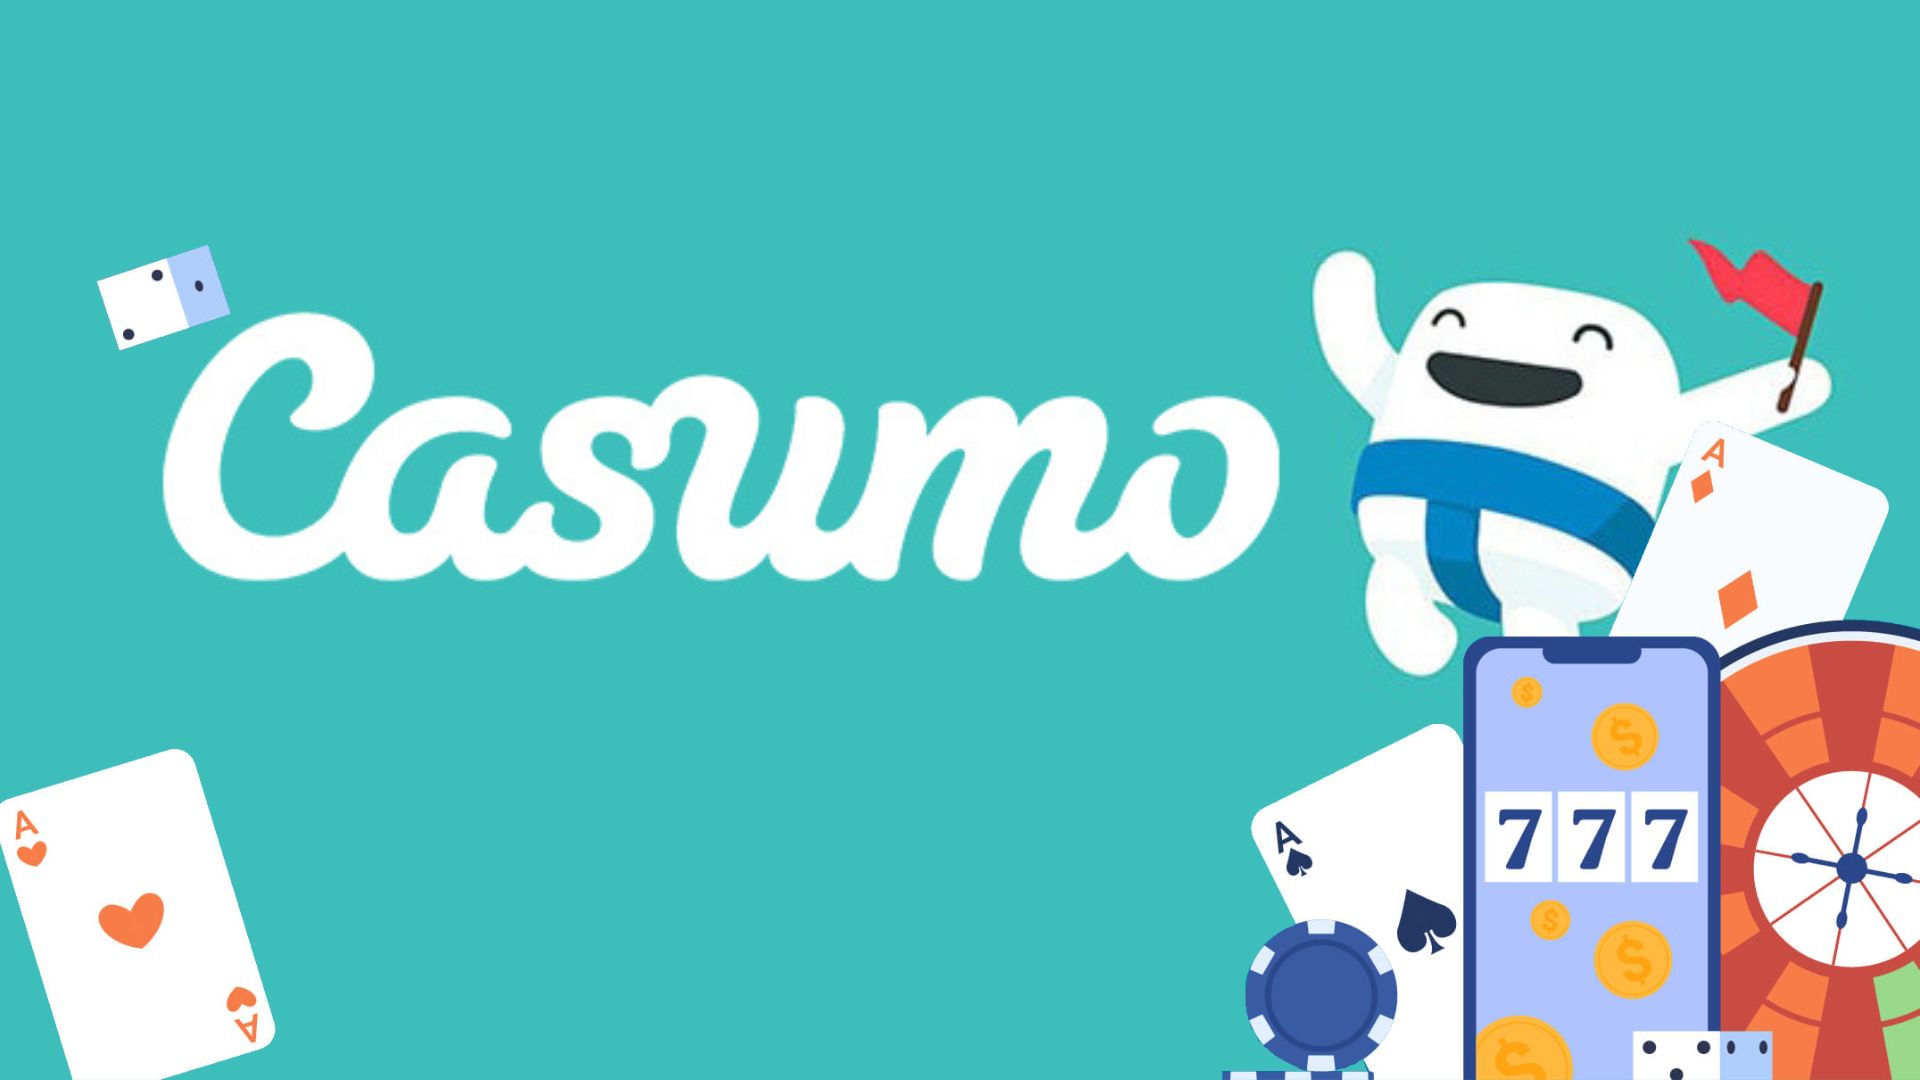 Casumo Casino Mobile App